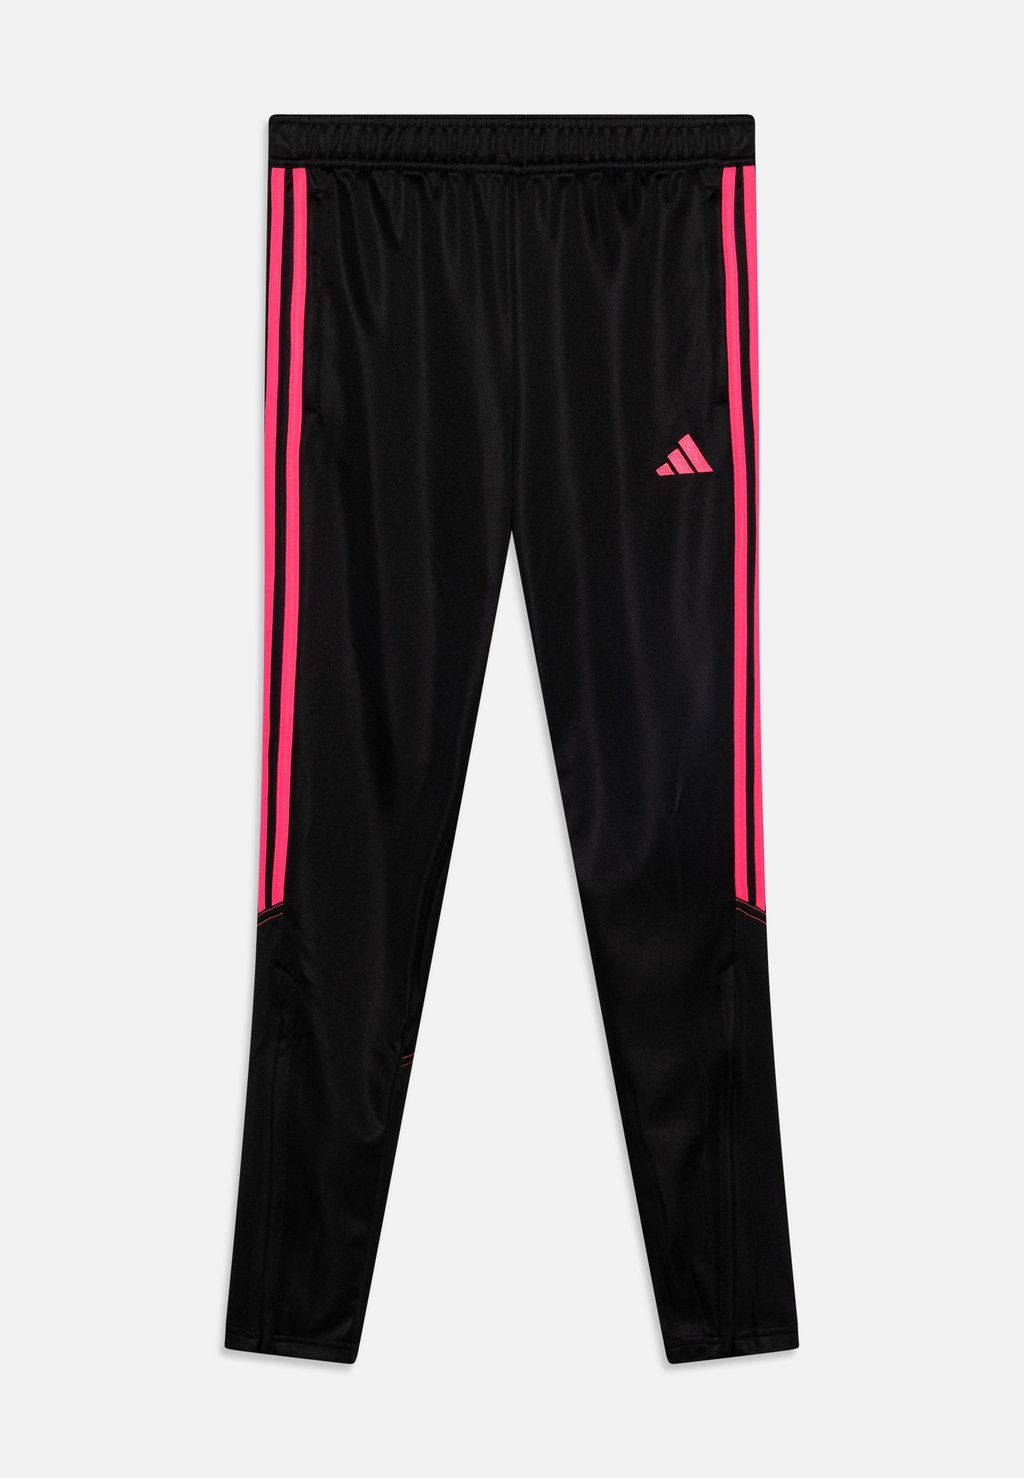 Спортивные брюки Tiro 23 Club Training Adidas, цвет black/lucid pink